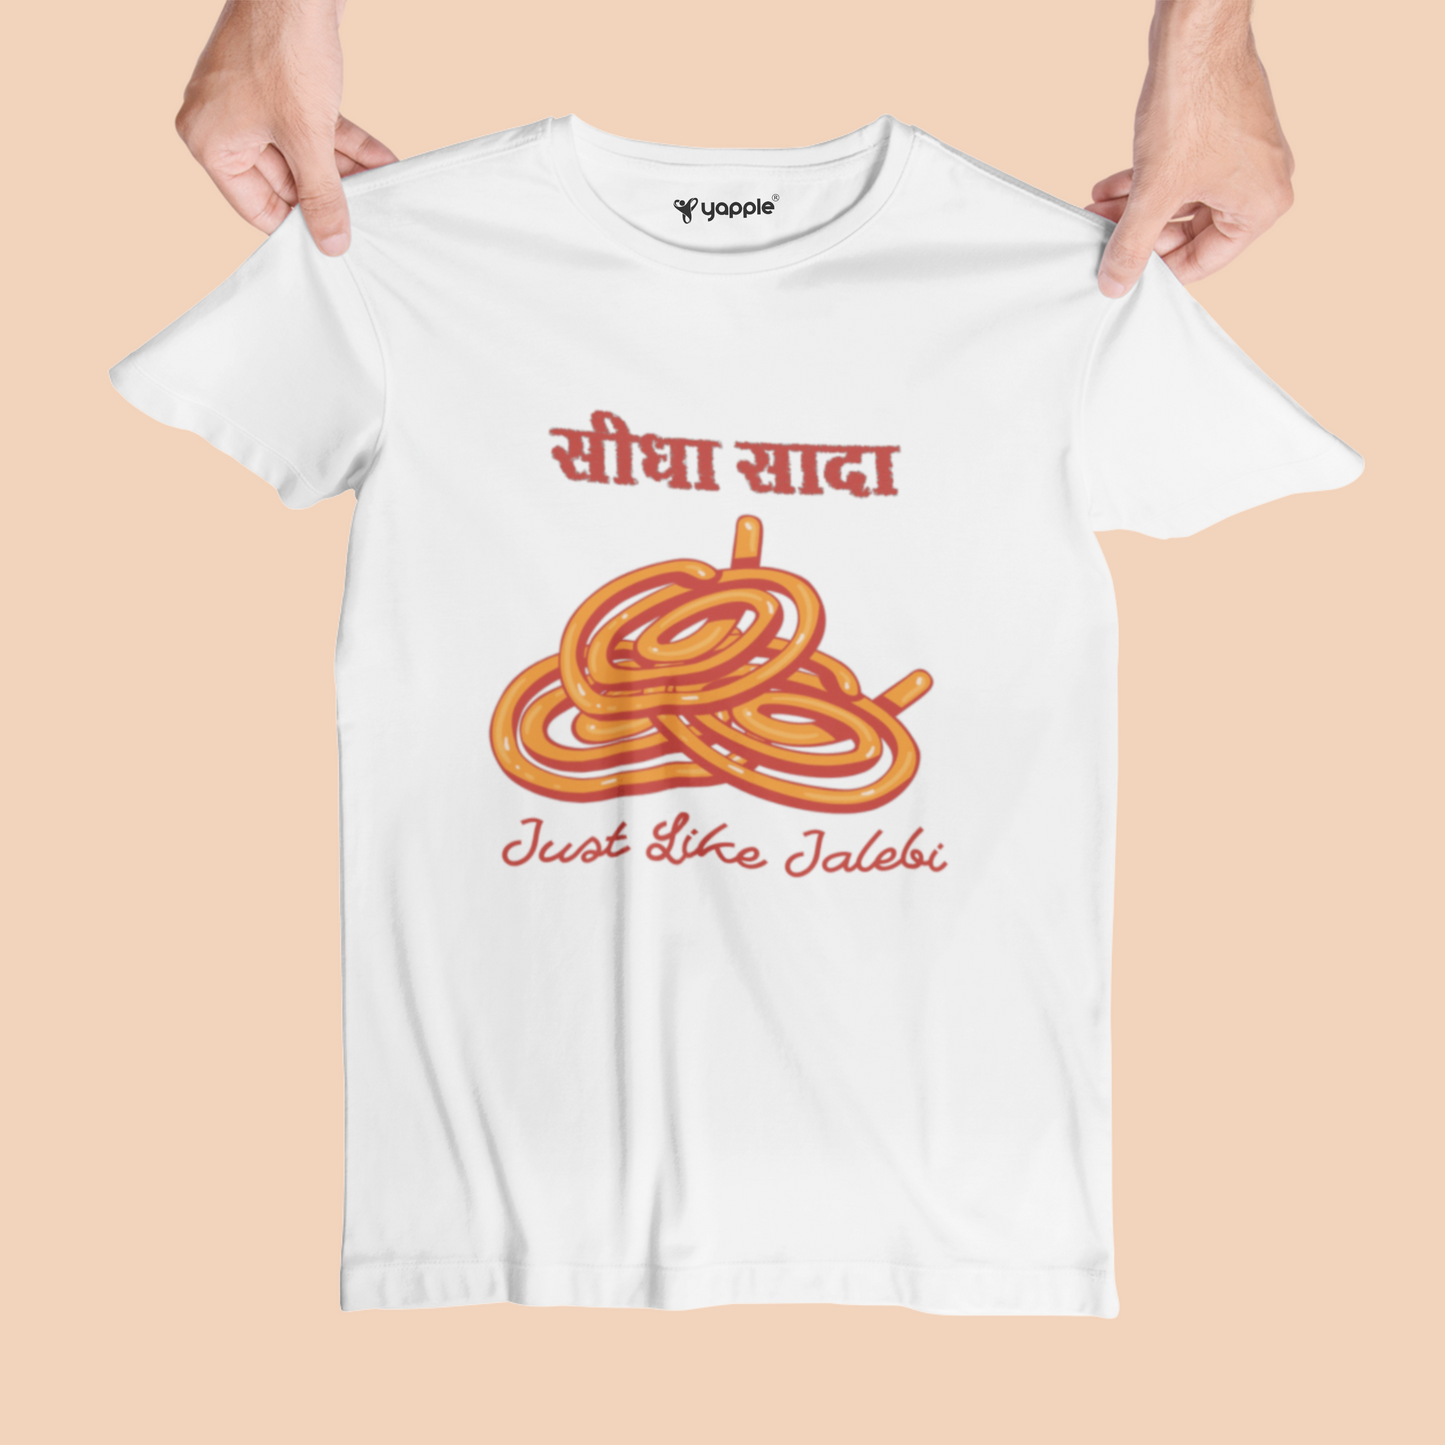 Sidha Sada Like Jalebi Printed T-Shirt - White